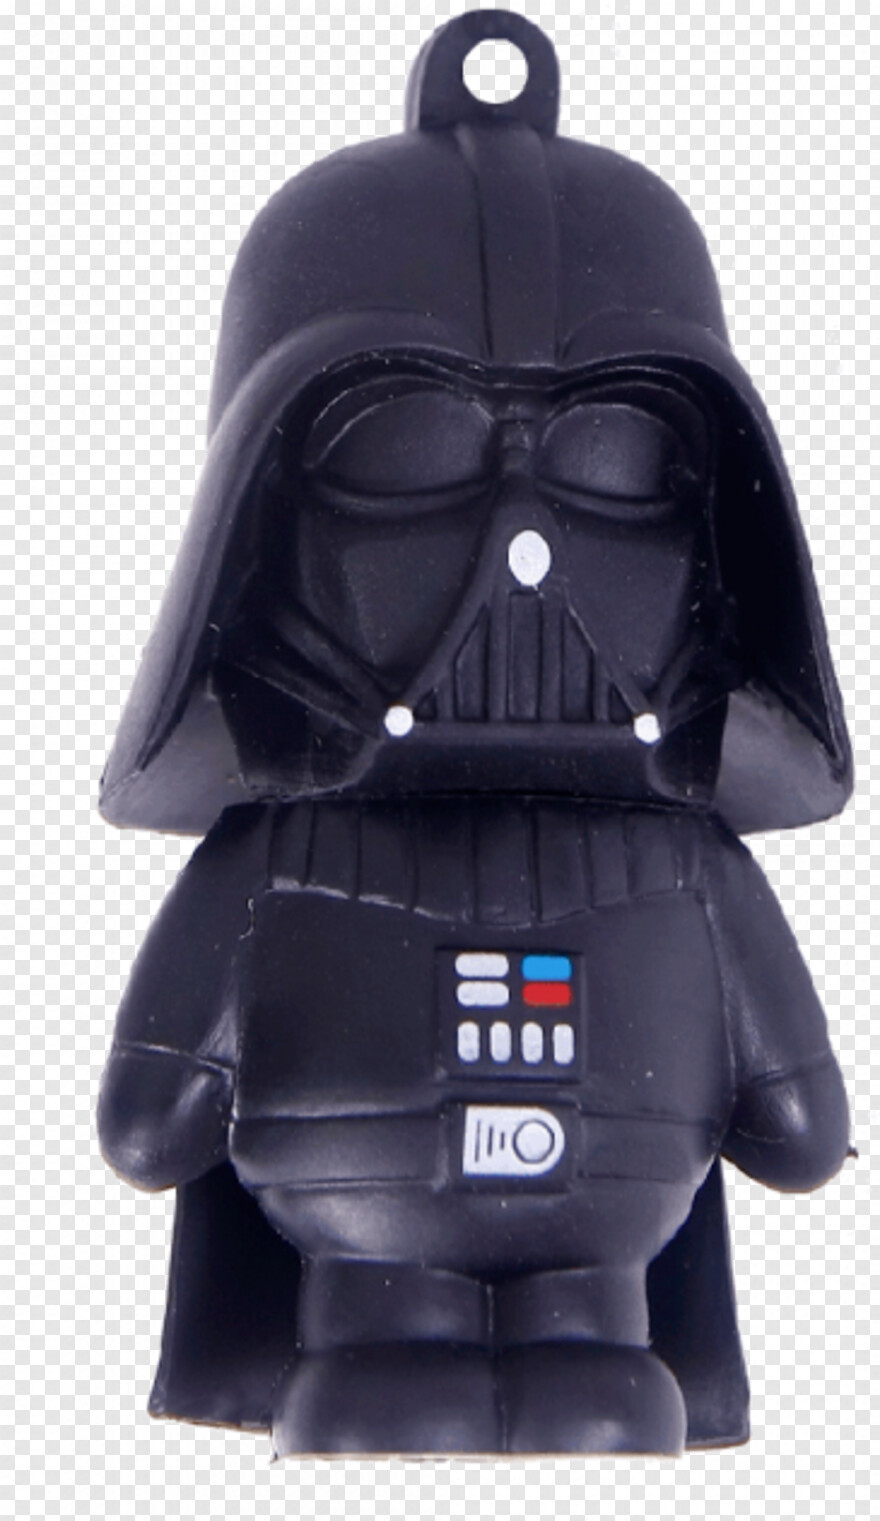  Darth Vader Helmet, Darth Maul